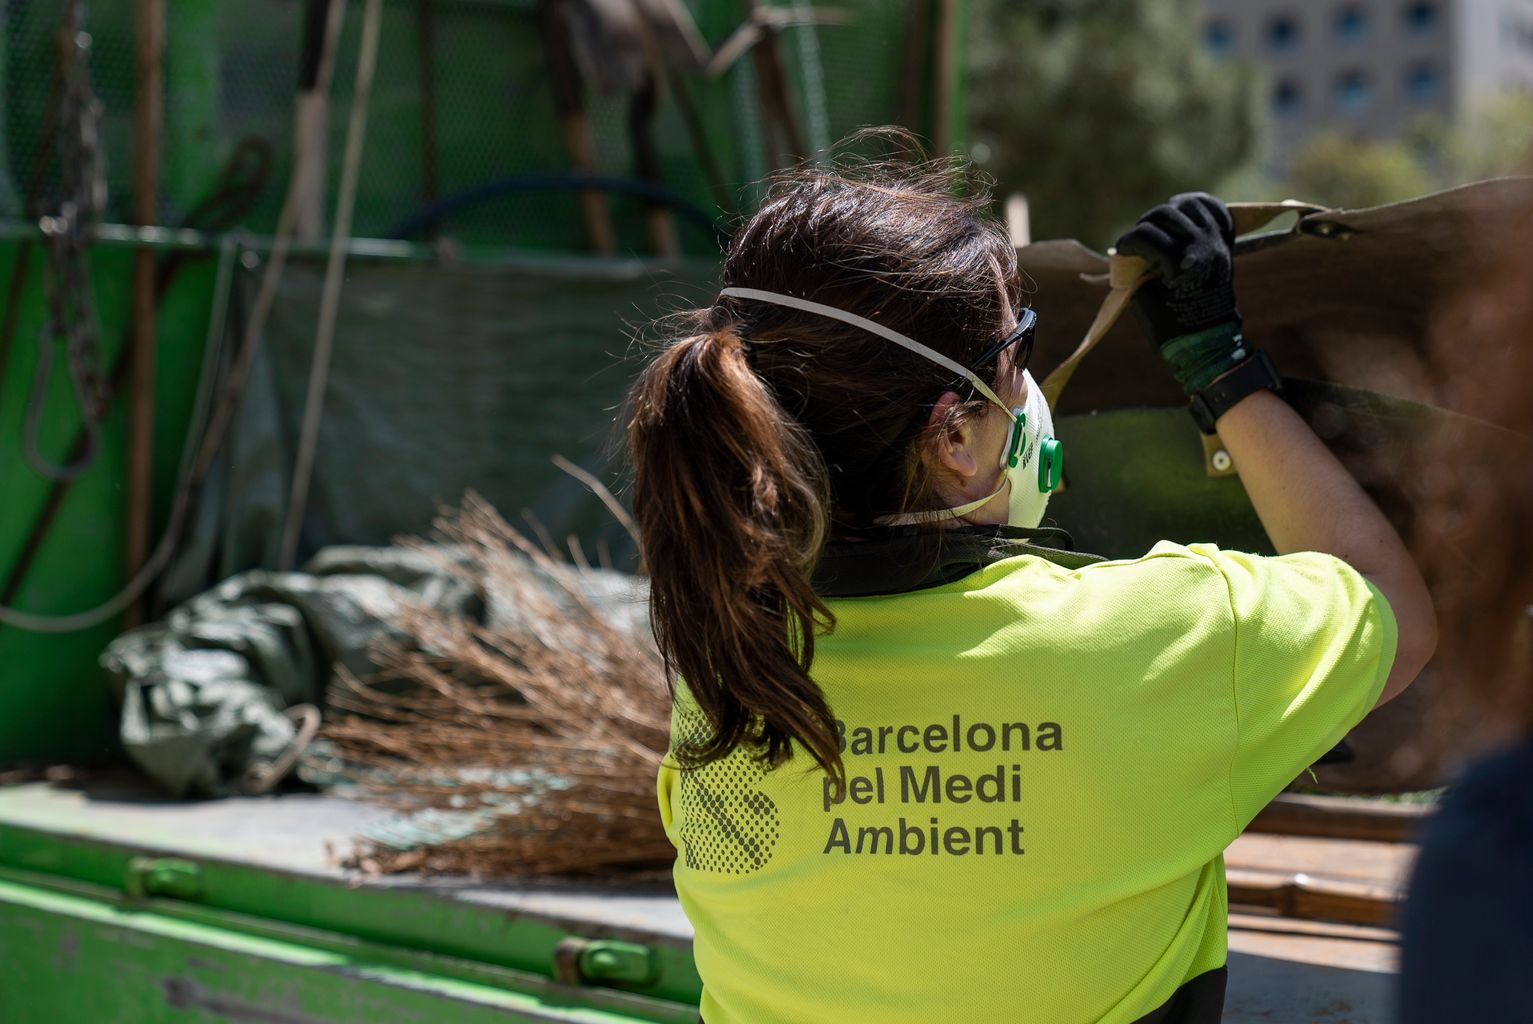 Una de les jardineres amb mascareta agafa un cistell de darrere del camió de Barcelona pel Medi Ambient